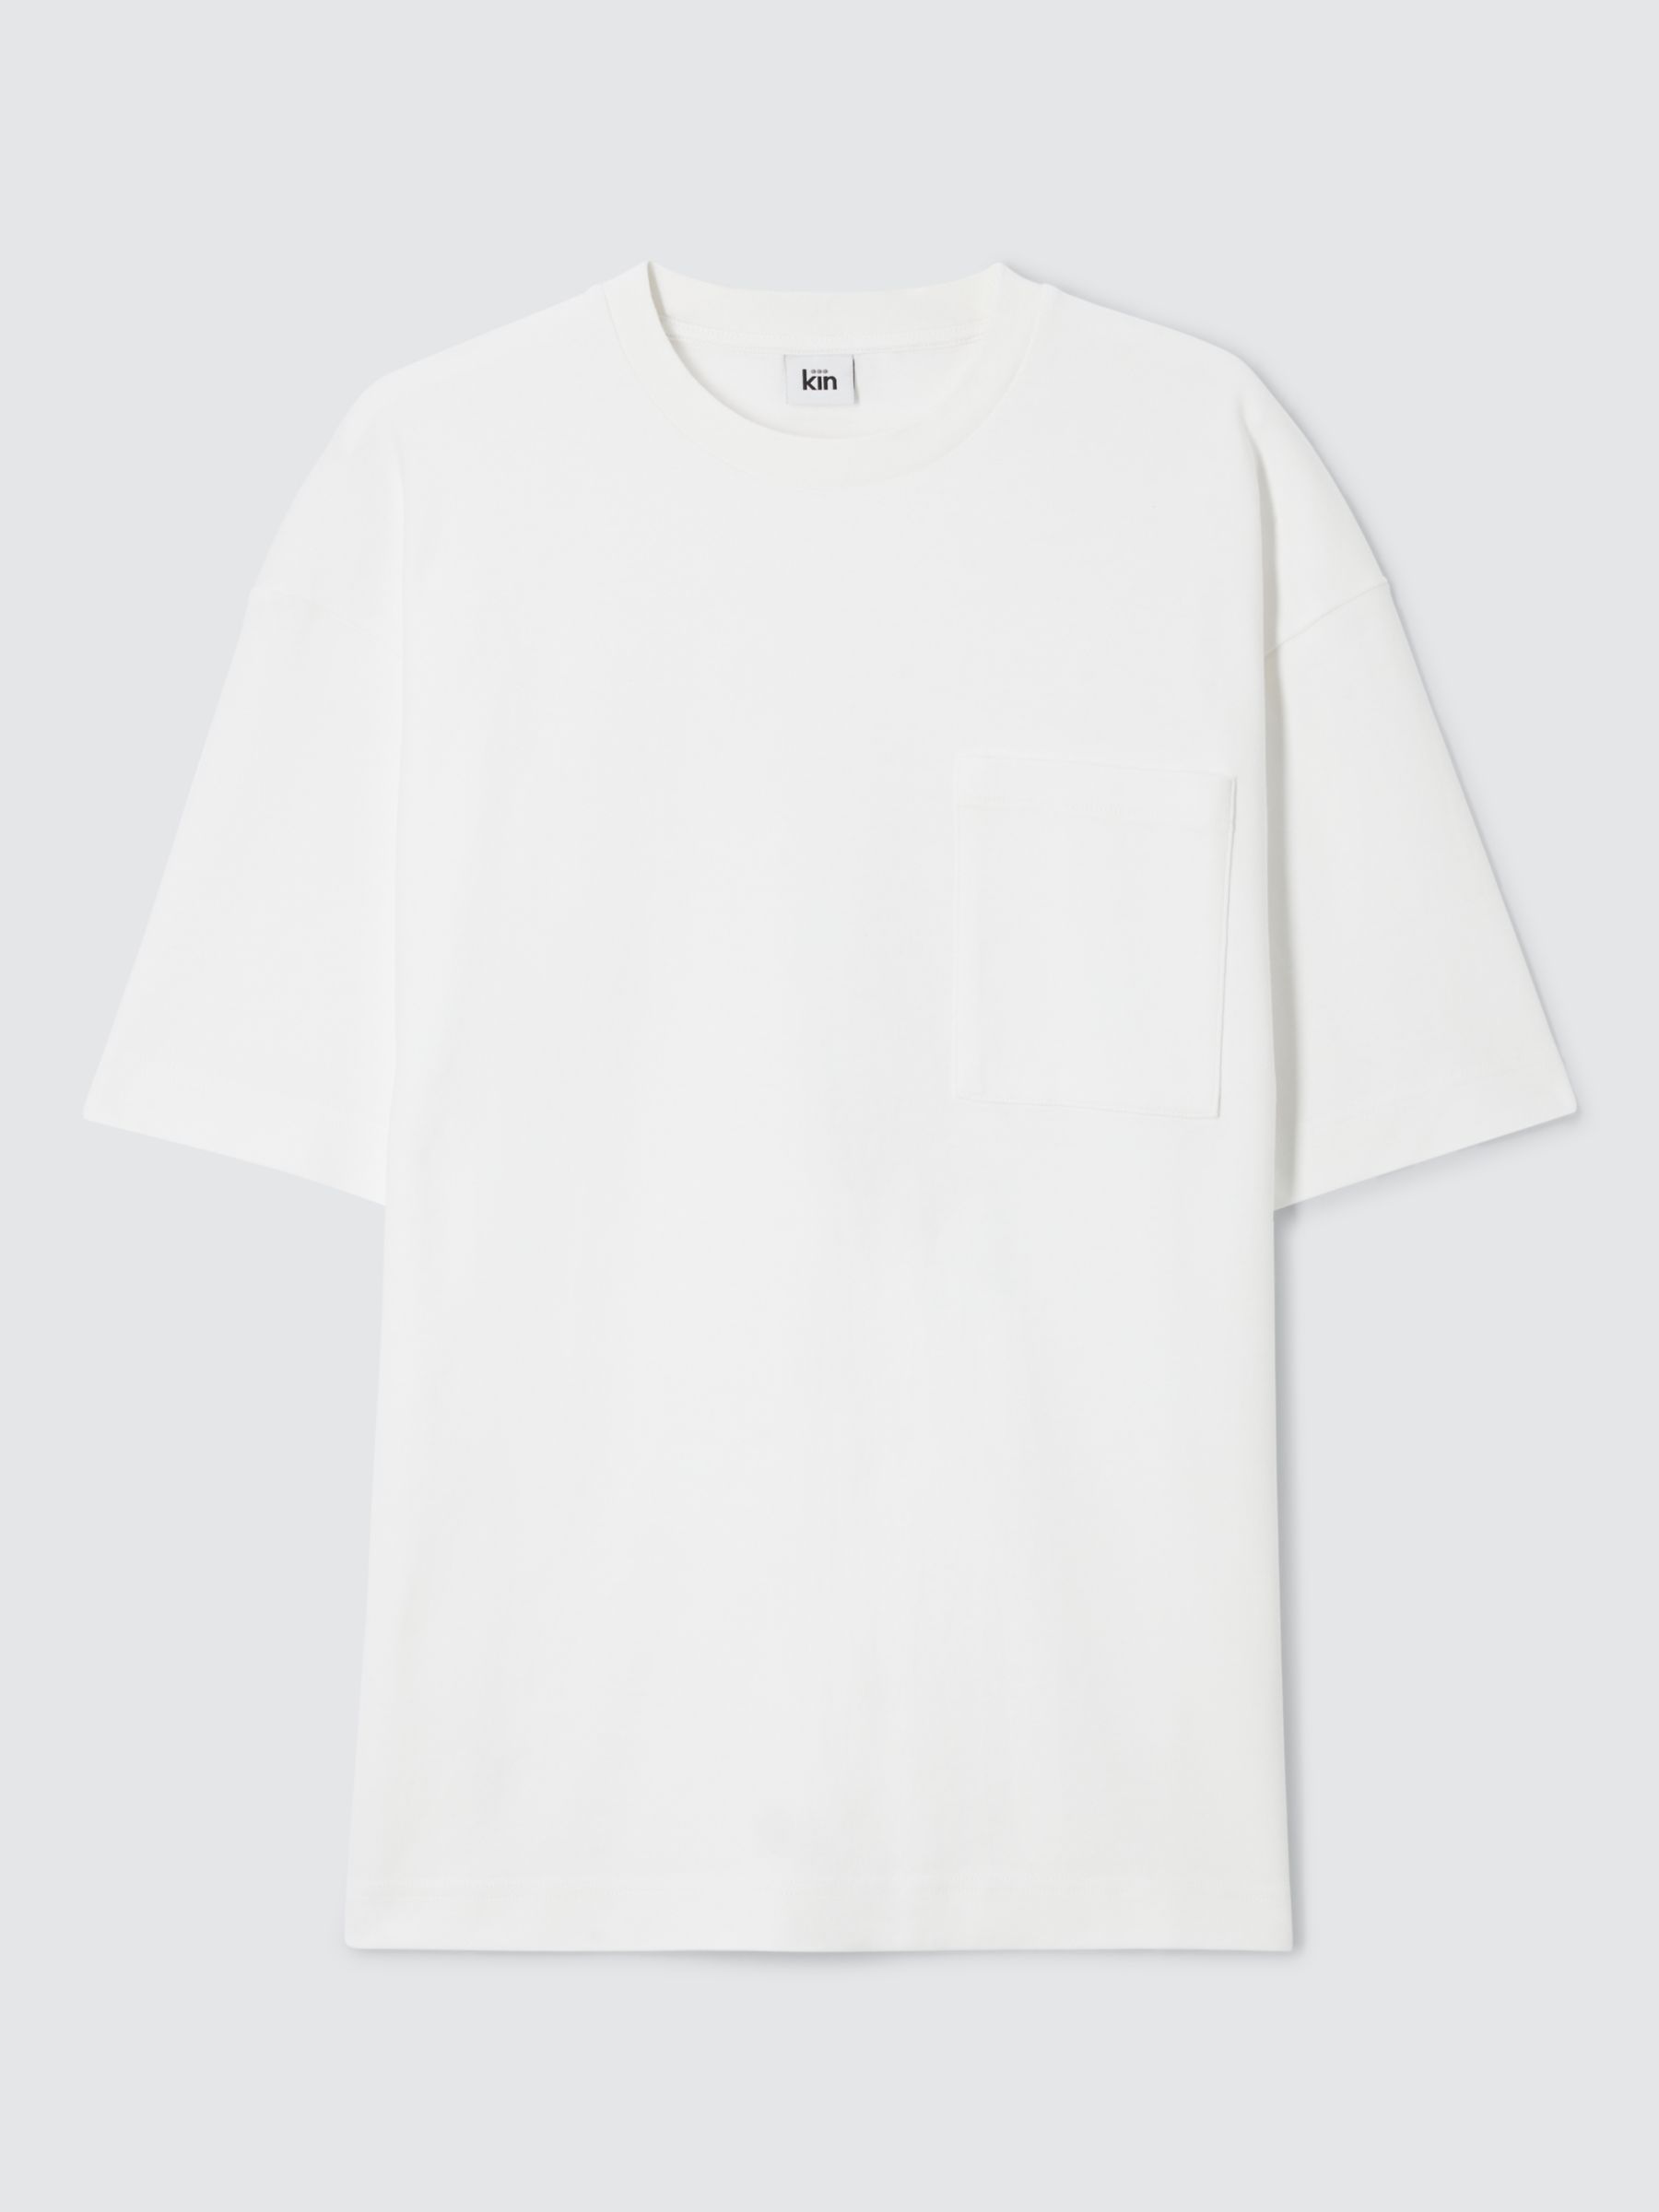 Kin Relaxed Heavy Cotton Short Sleeve Pocket T-Shirt, Cloud Dancer, L